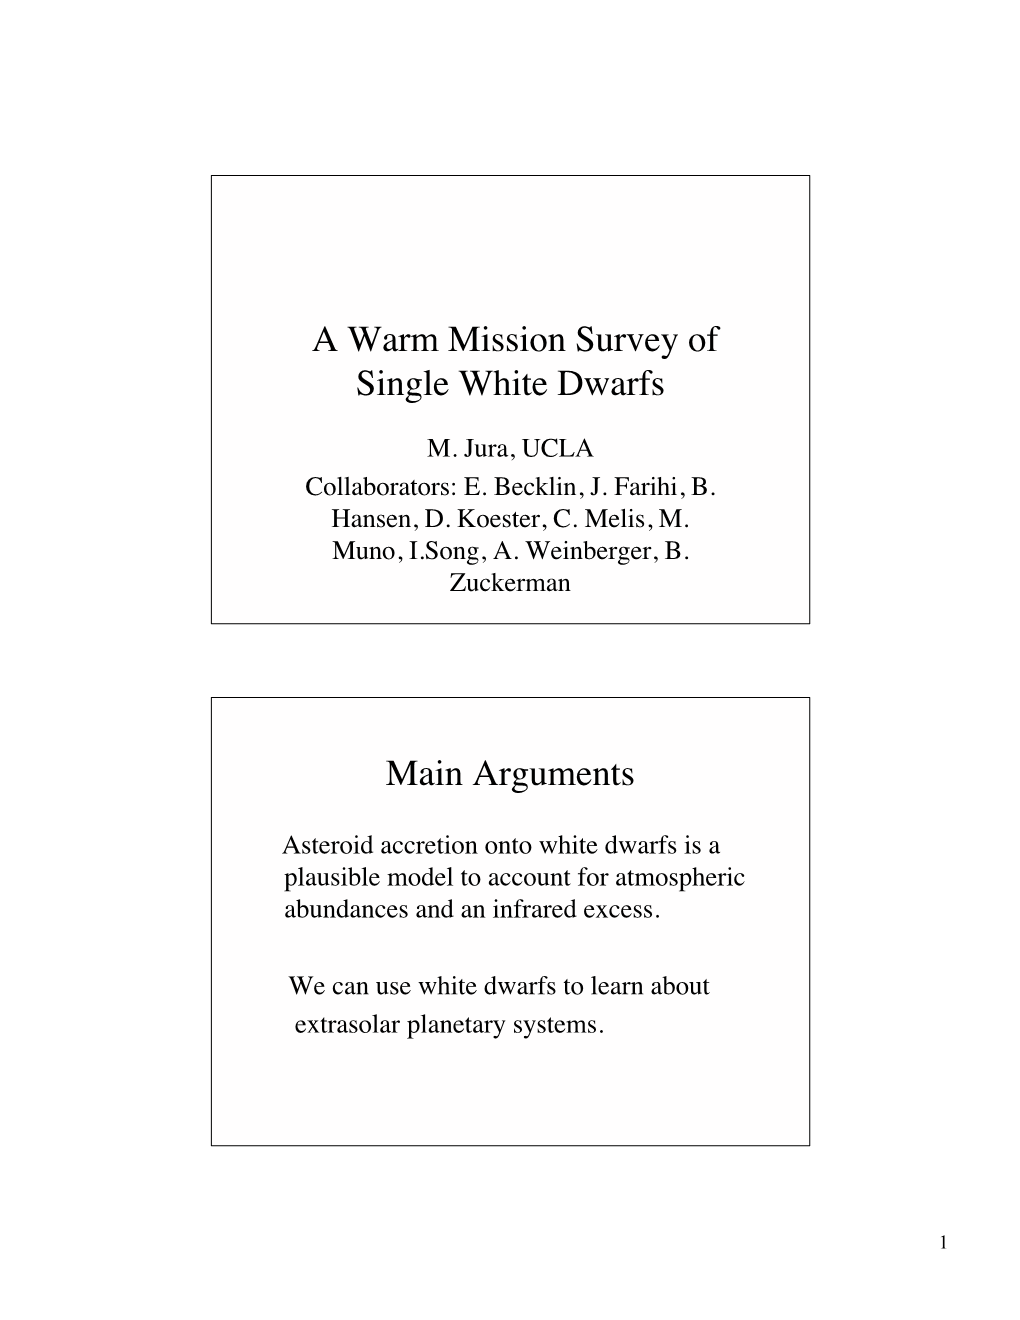 A Warm Mission Survey of Single White Dwarfs Main Arguments